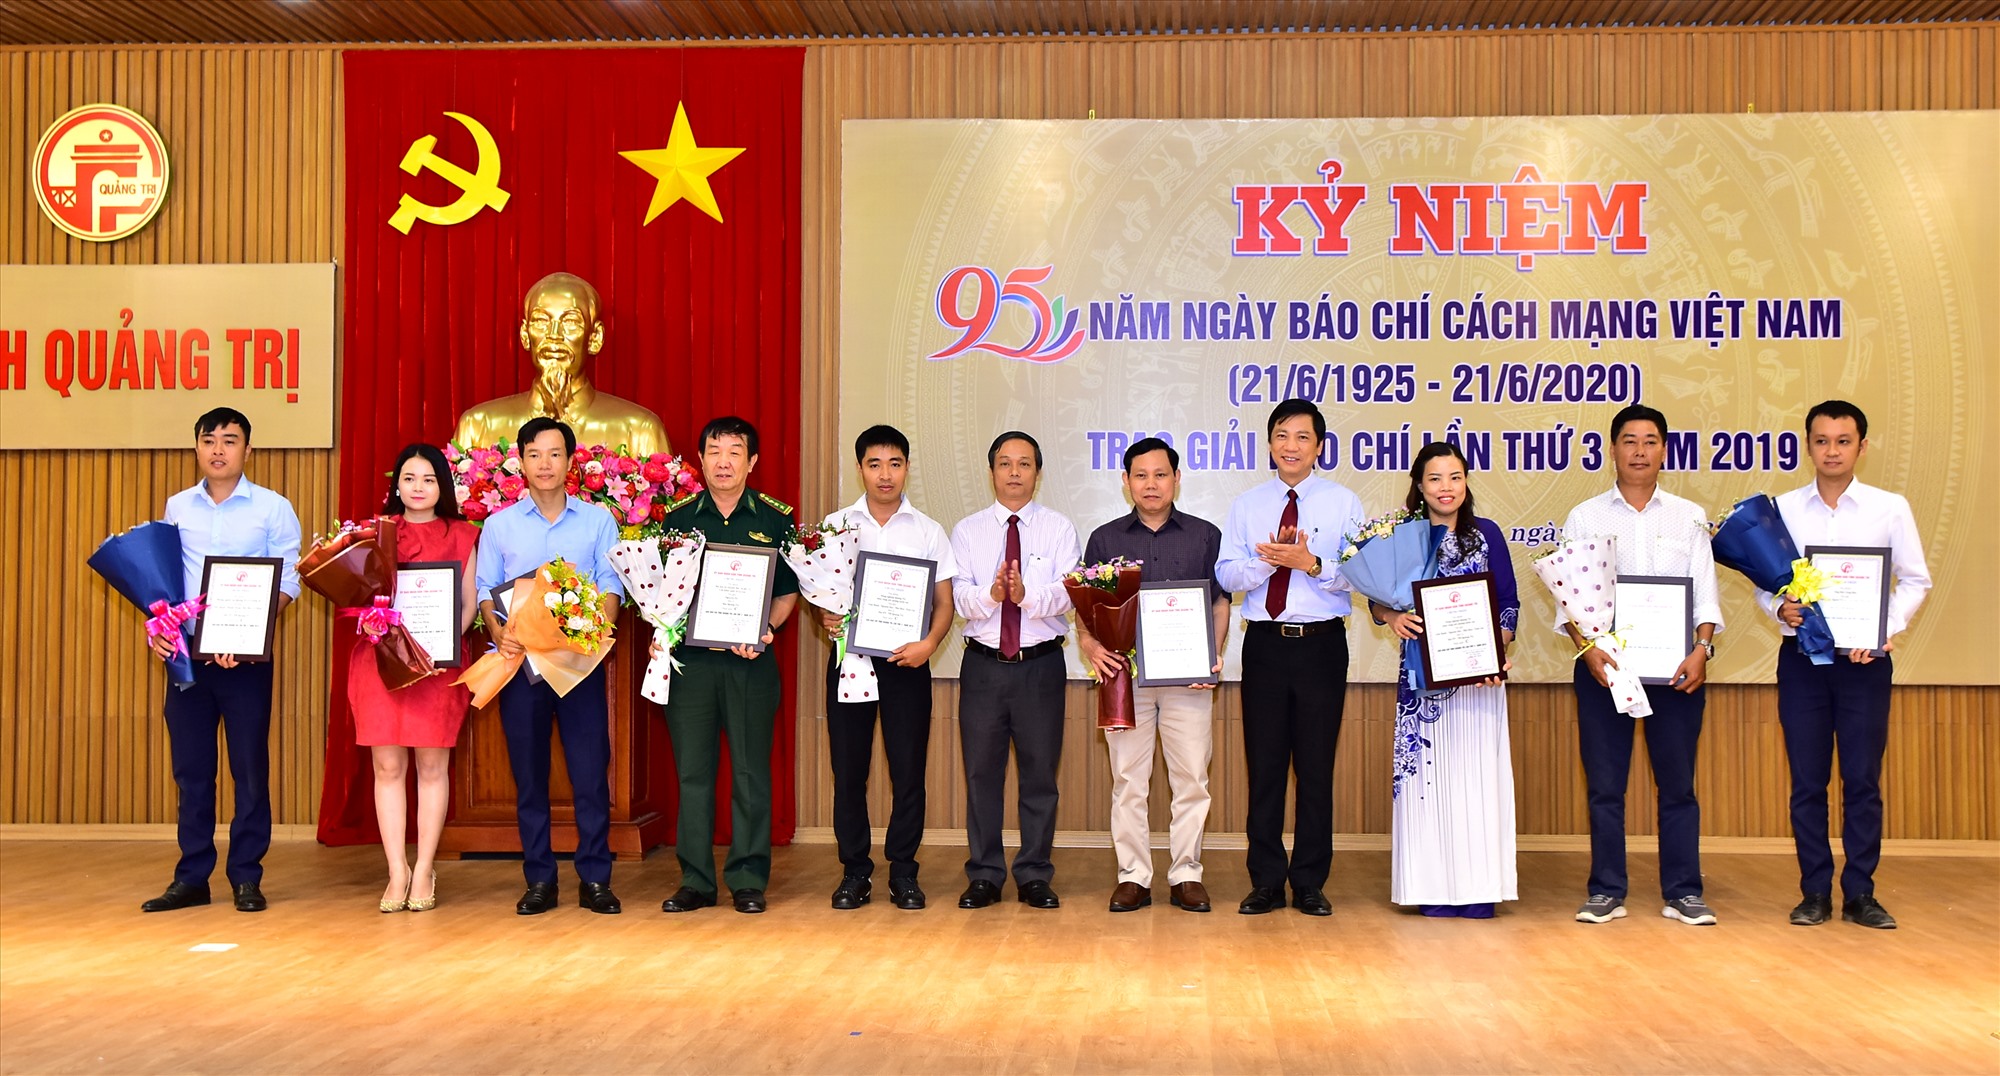 Phó Chủ tịch HĐND tỉnh Nguyễn Trần Huy; Phó Chủ tịch UBND tỉnh Hoàng Nam trao giải C cho các tác giả